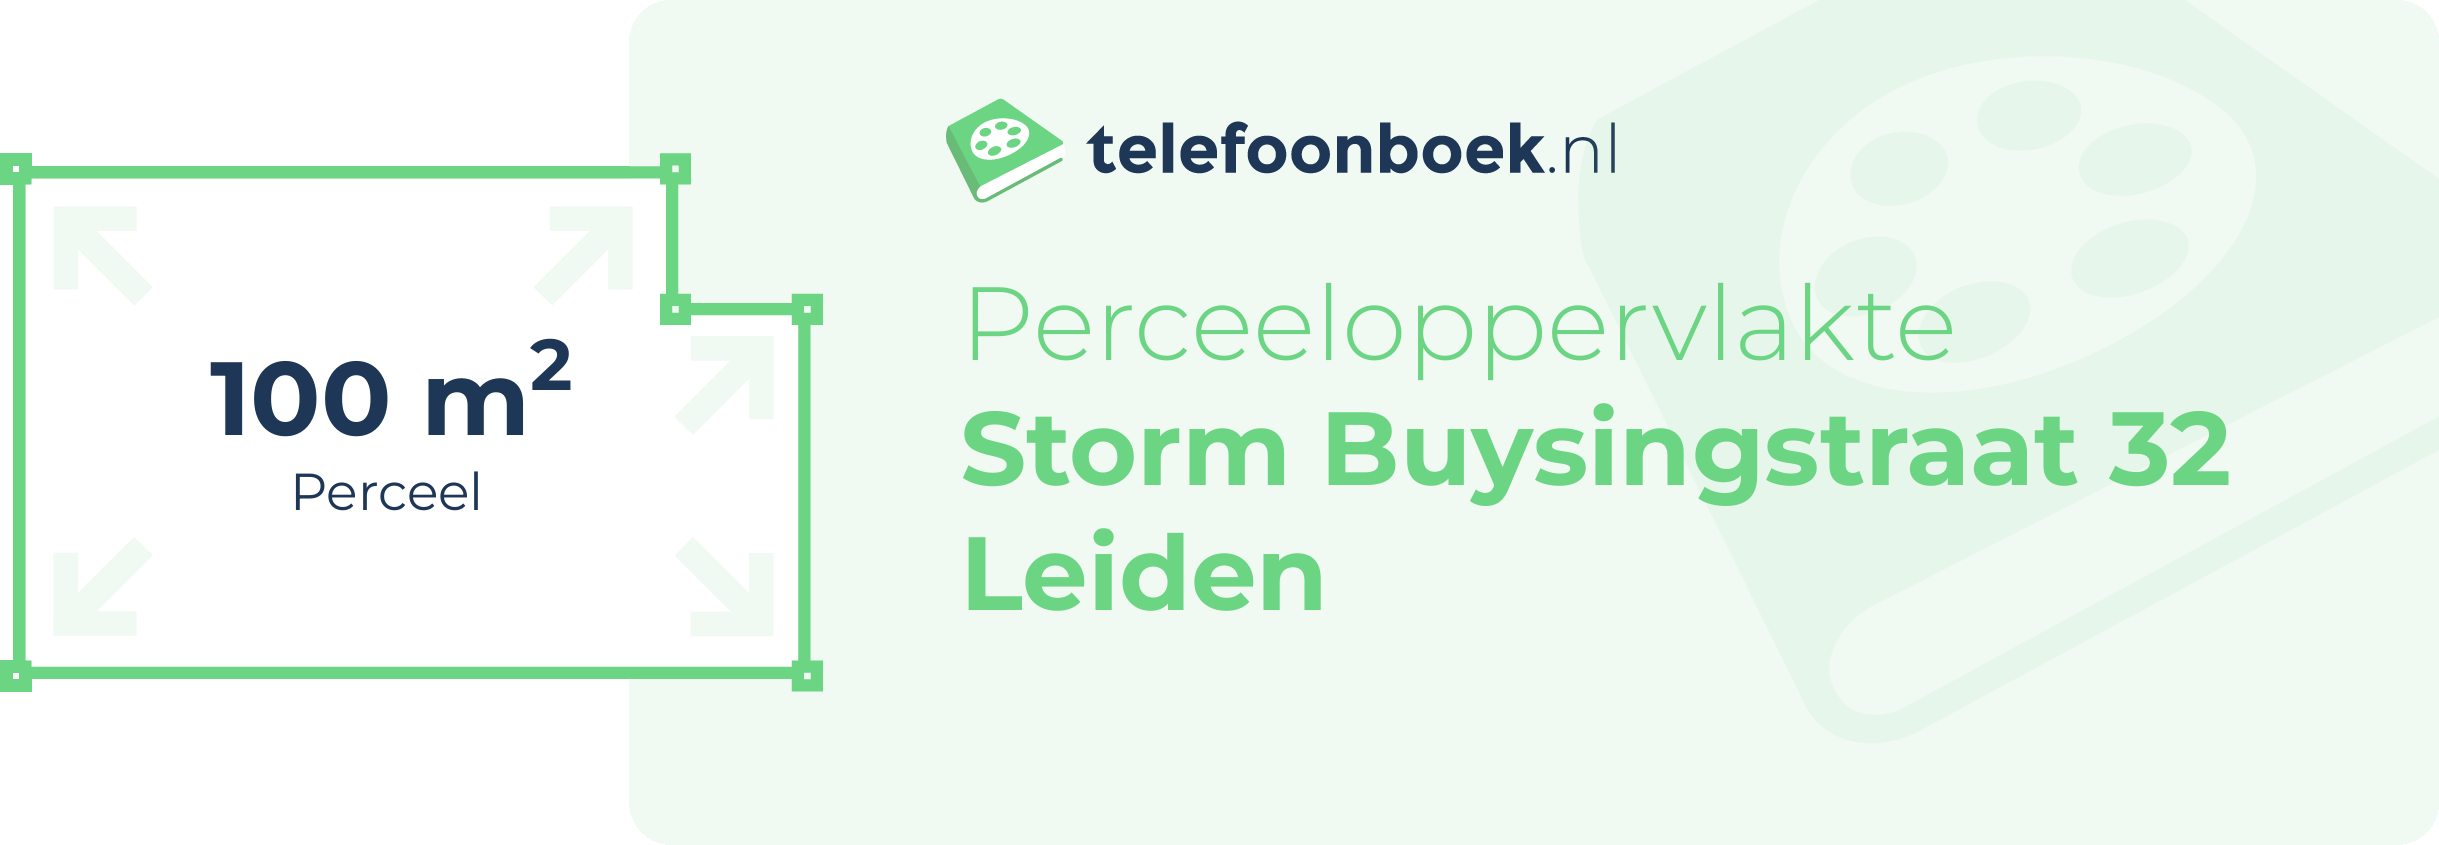 Perceeloppervlakte Storm Buysingstraat 32 Leiden